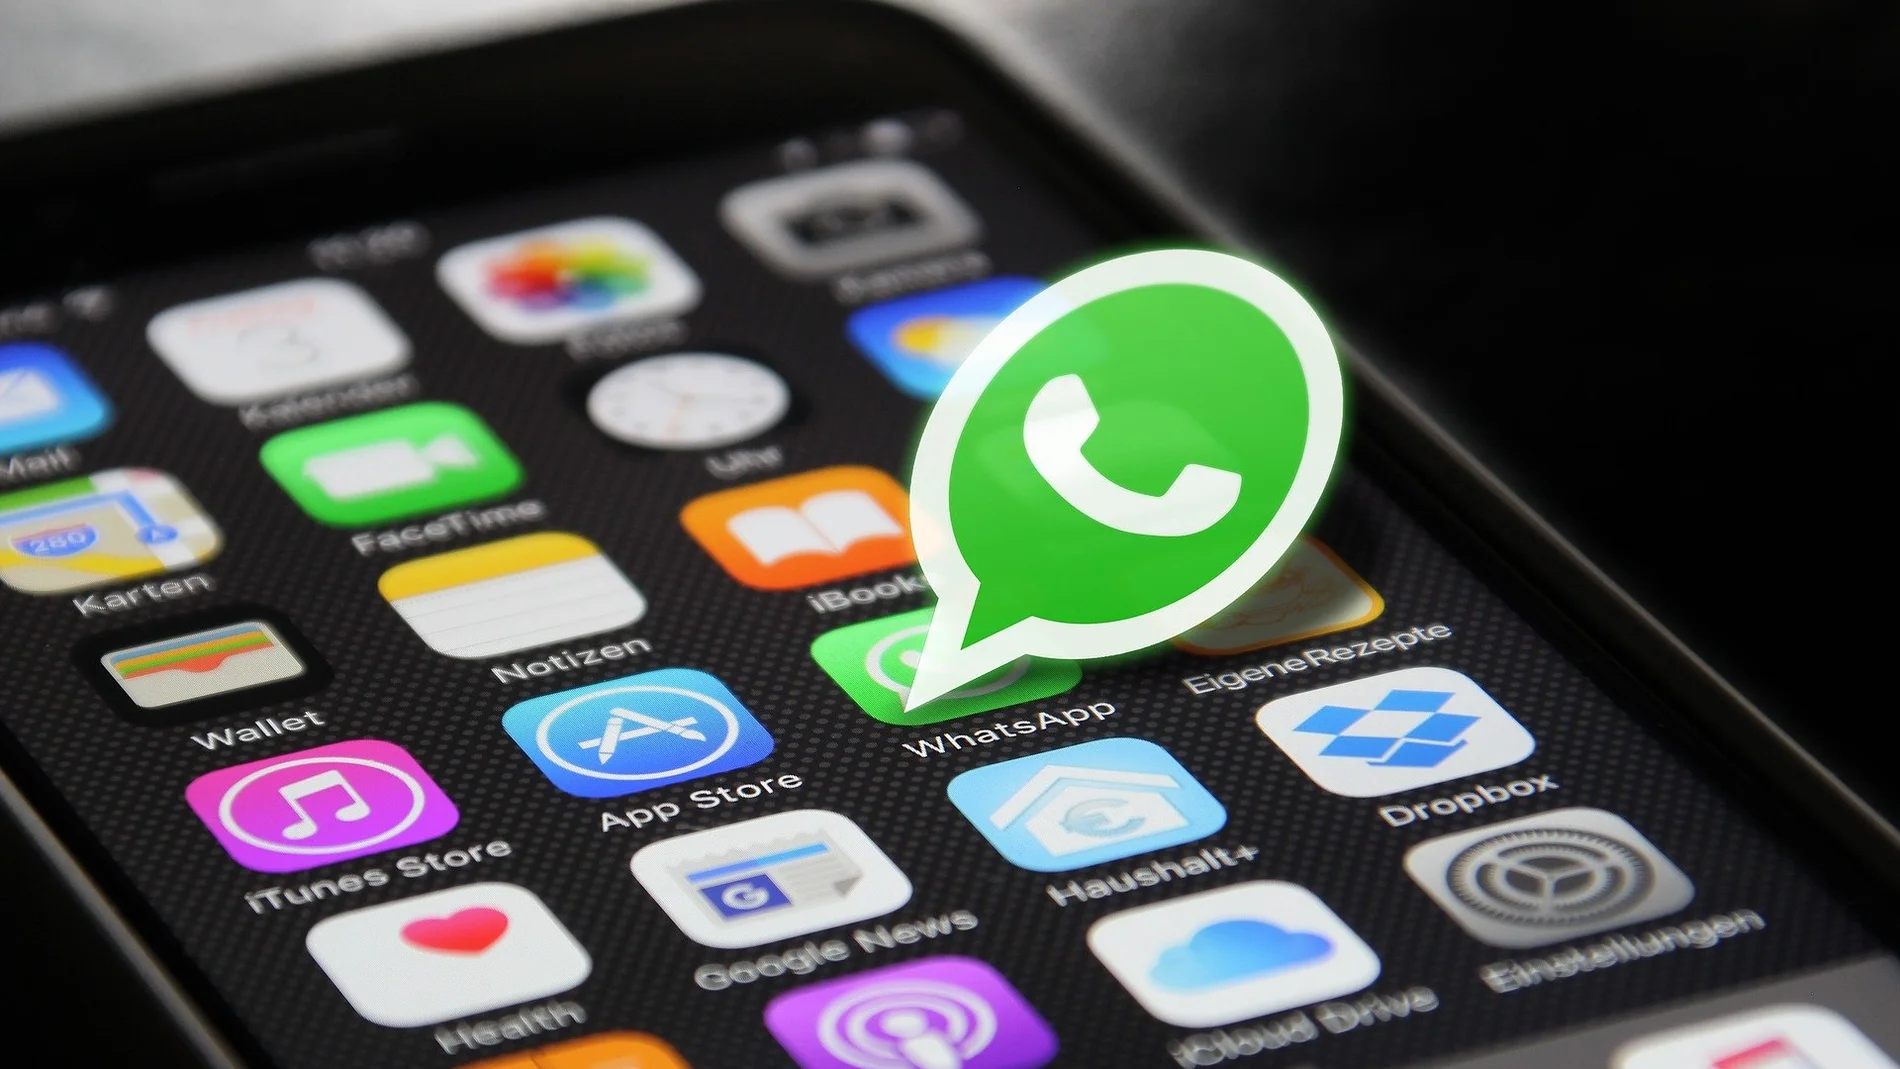 ¿Se pueden recuperar los mensajes borrados en WhatsApp?